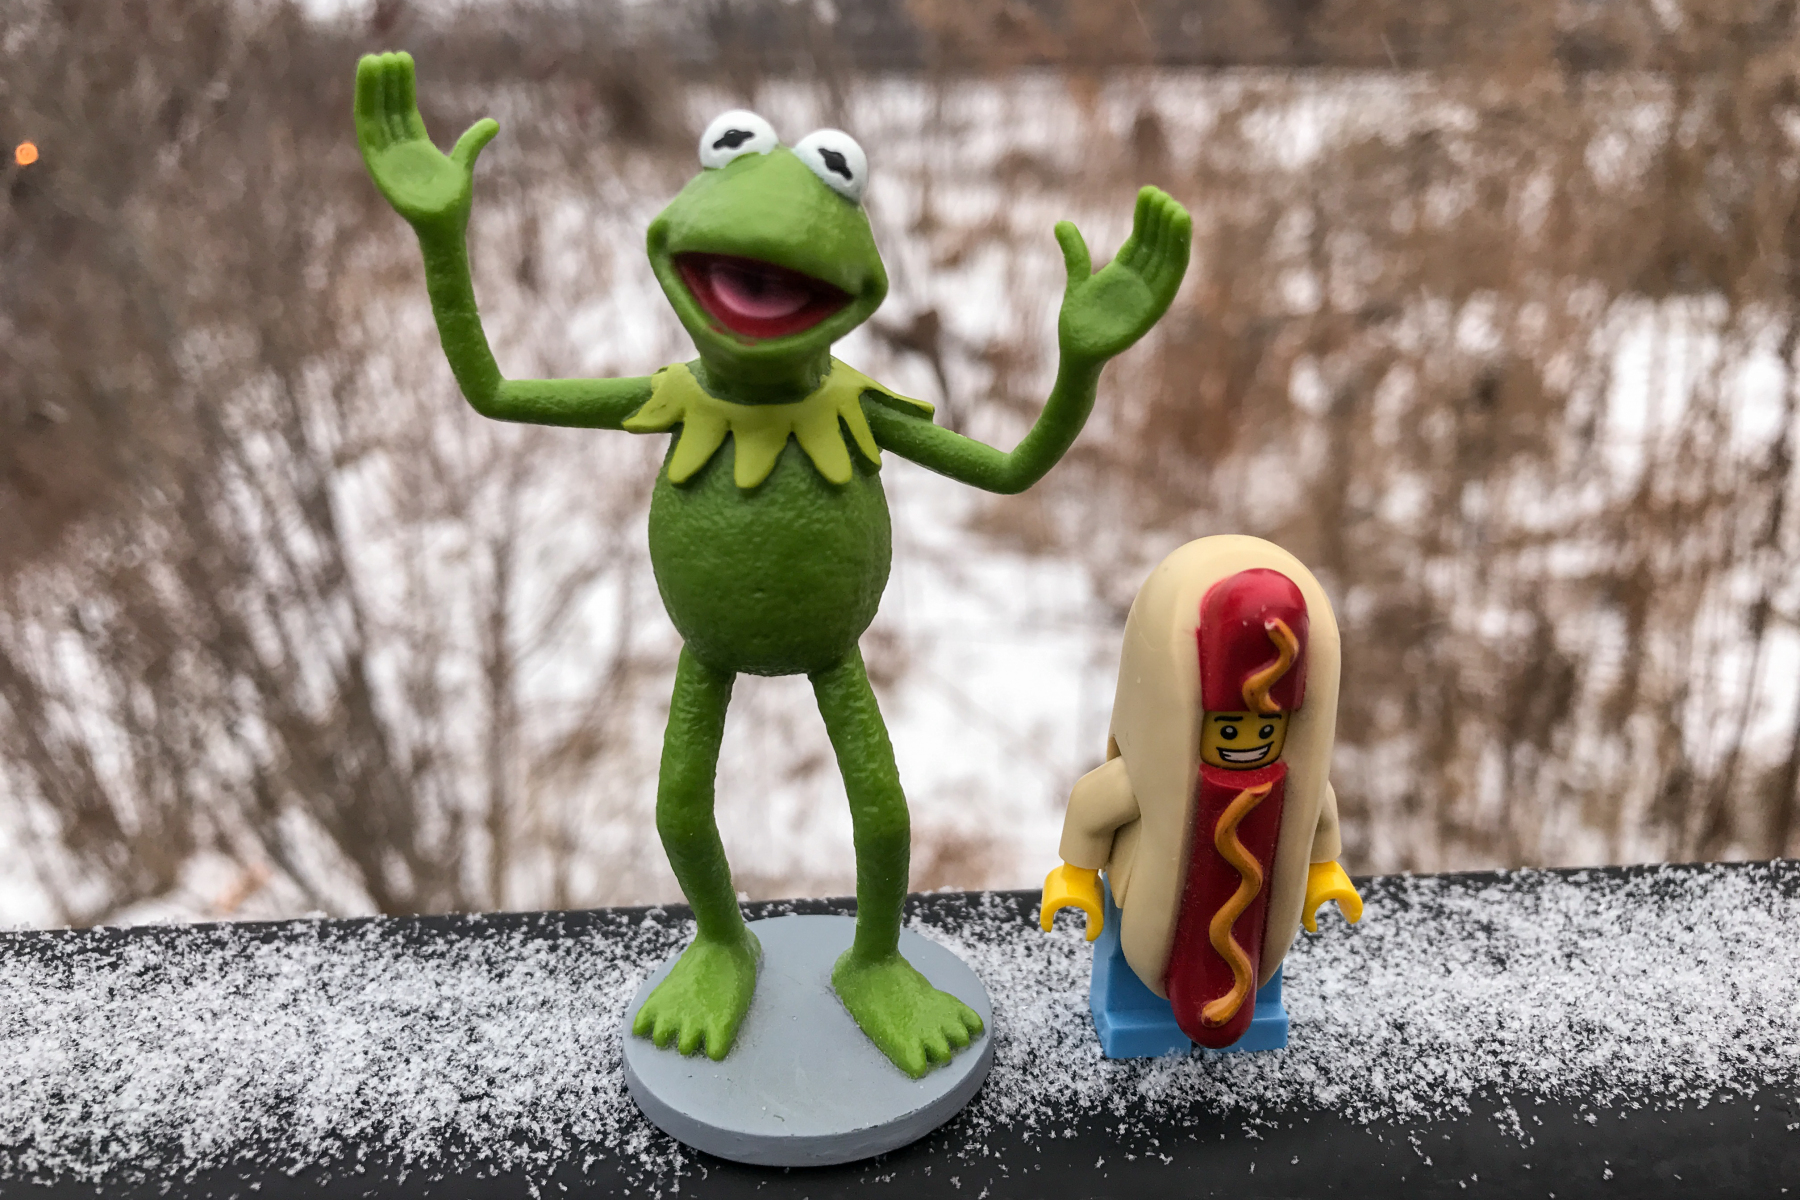 Kermit and Mr Hotdog Lego Guy take a walk in the fresh fallen sn